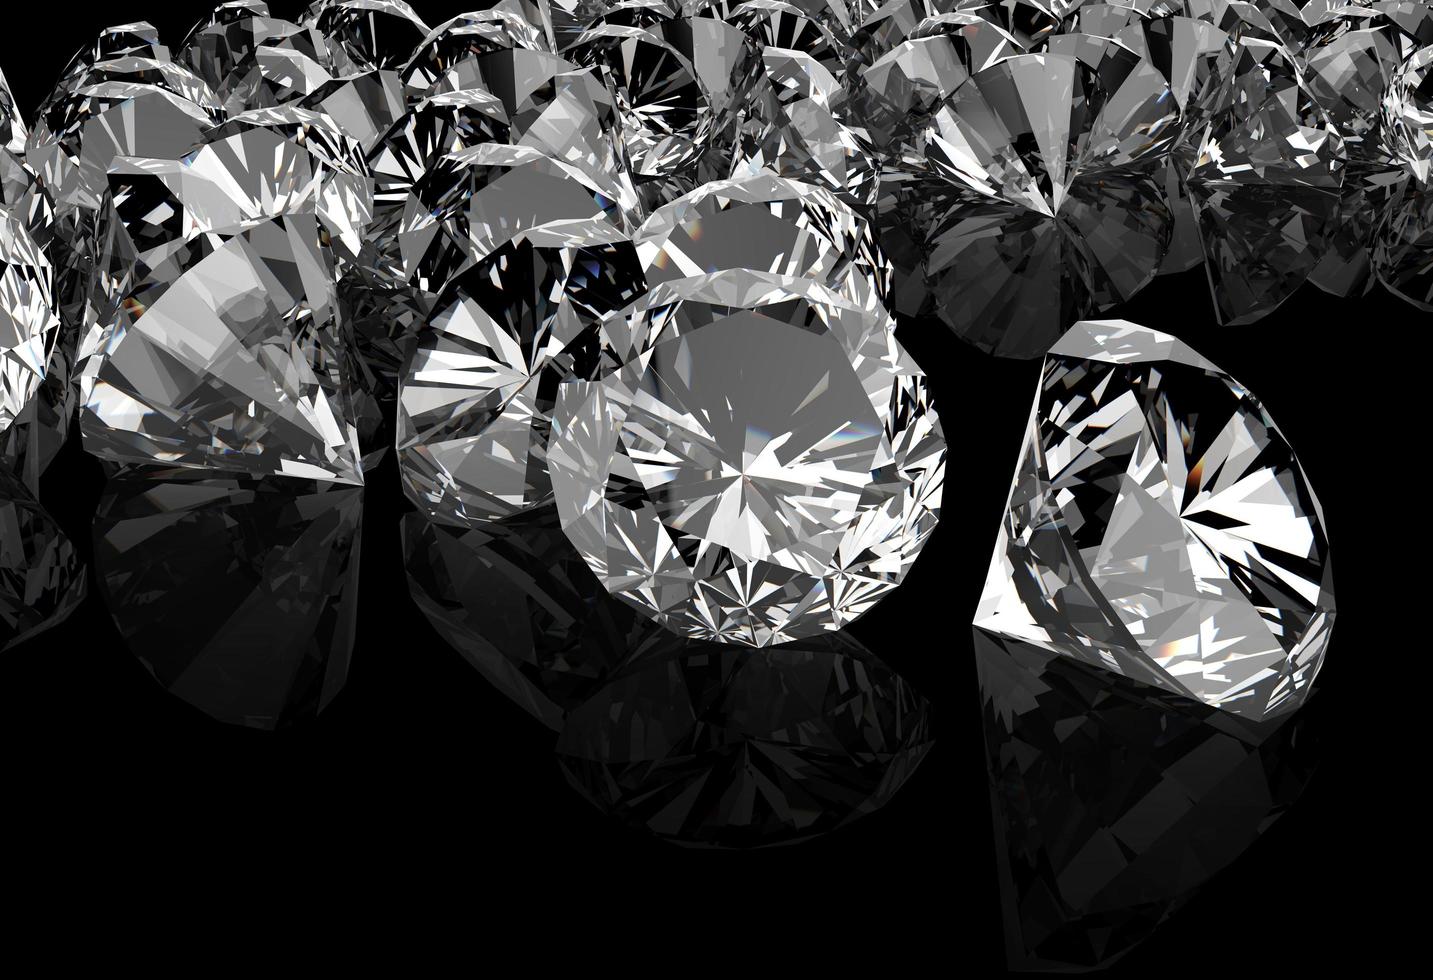 diamantes na superfície preta foto